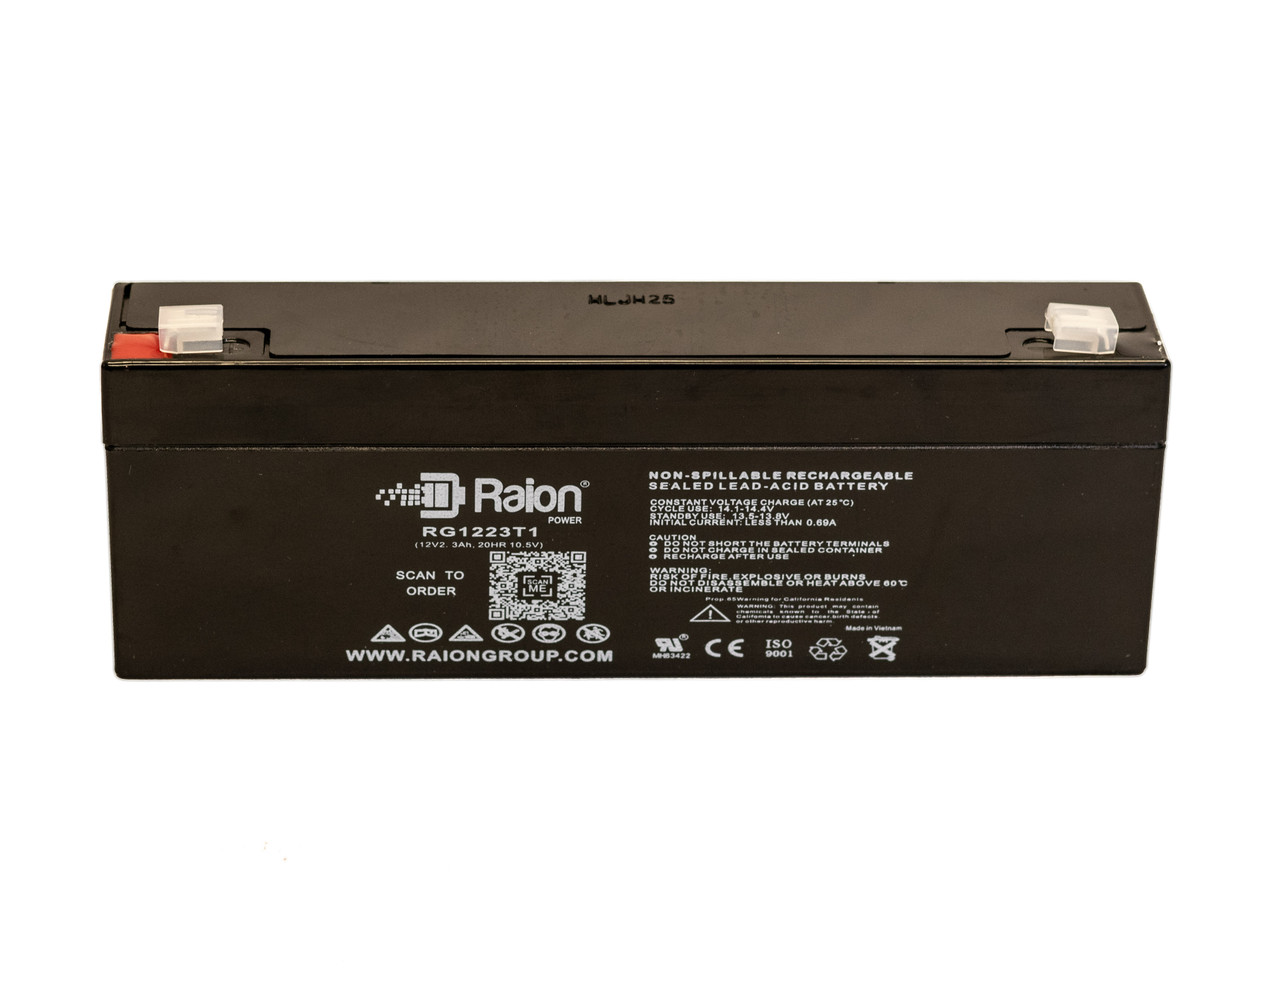 Raion Power 12V 2.3Ah SLA Battery With T1 Terminals For Picker International Pulsar 4 Defibrillator